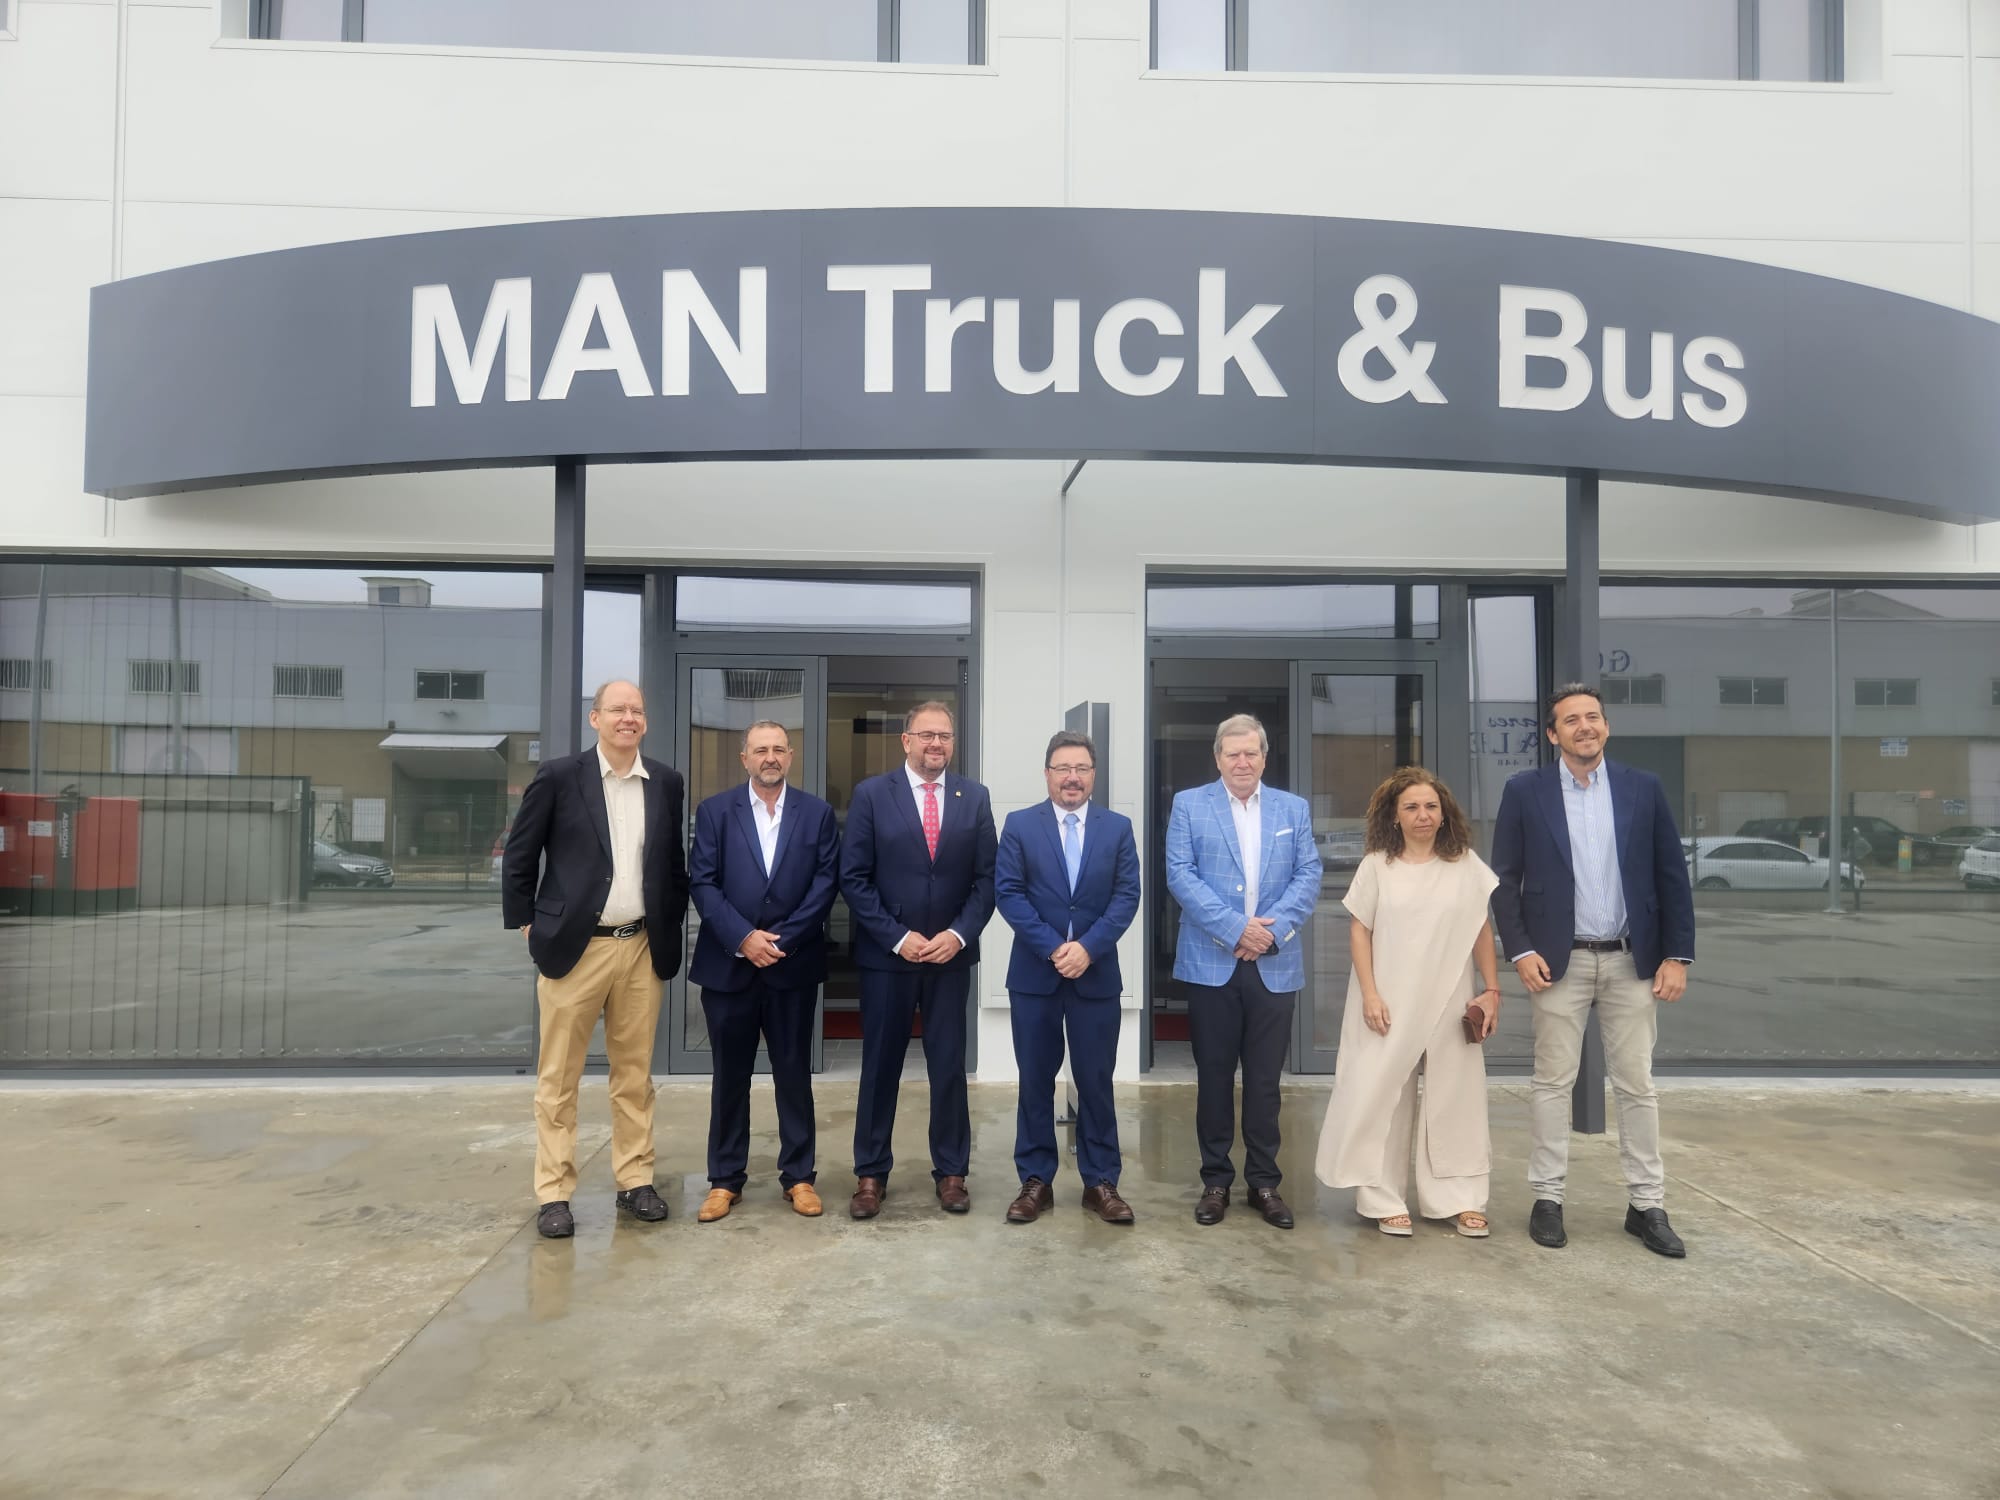 Image 1 of article El consejero Santamaría inaugura las nuevas instalaciones de la empresa Hydraplan, Man Truck & Bus en Mérida que han pasado de 3.000 a 15.000 metros cuadrados